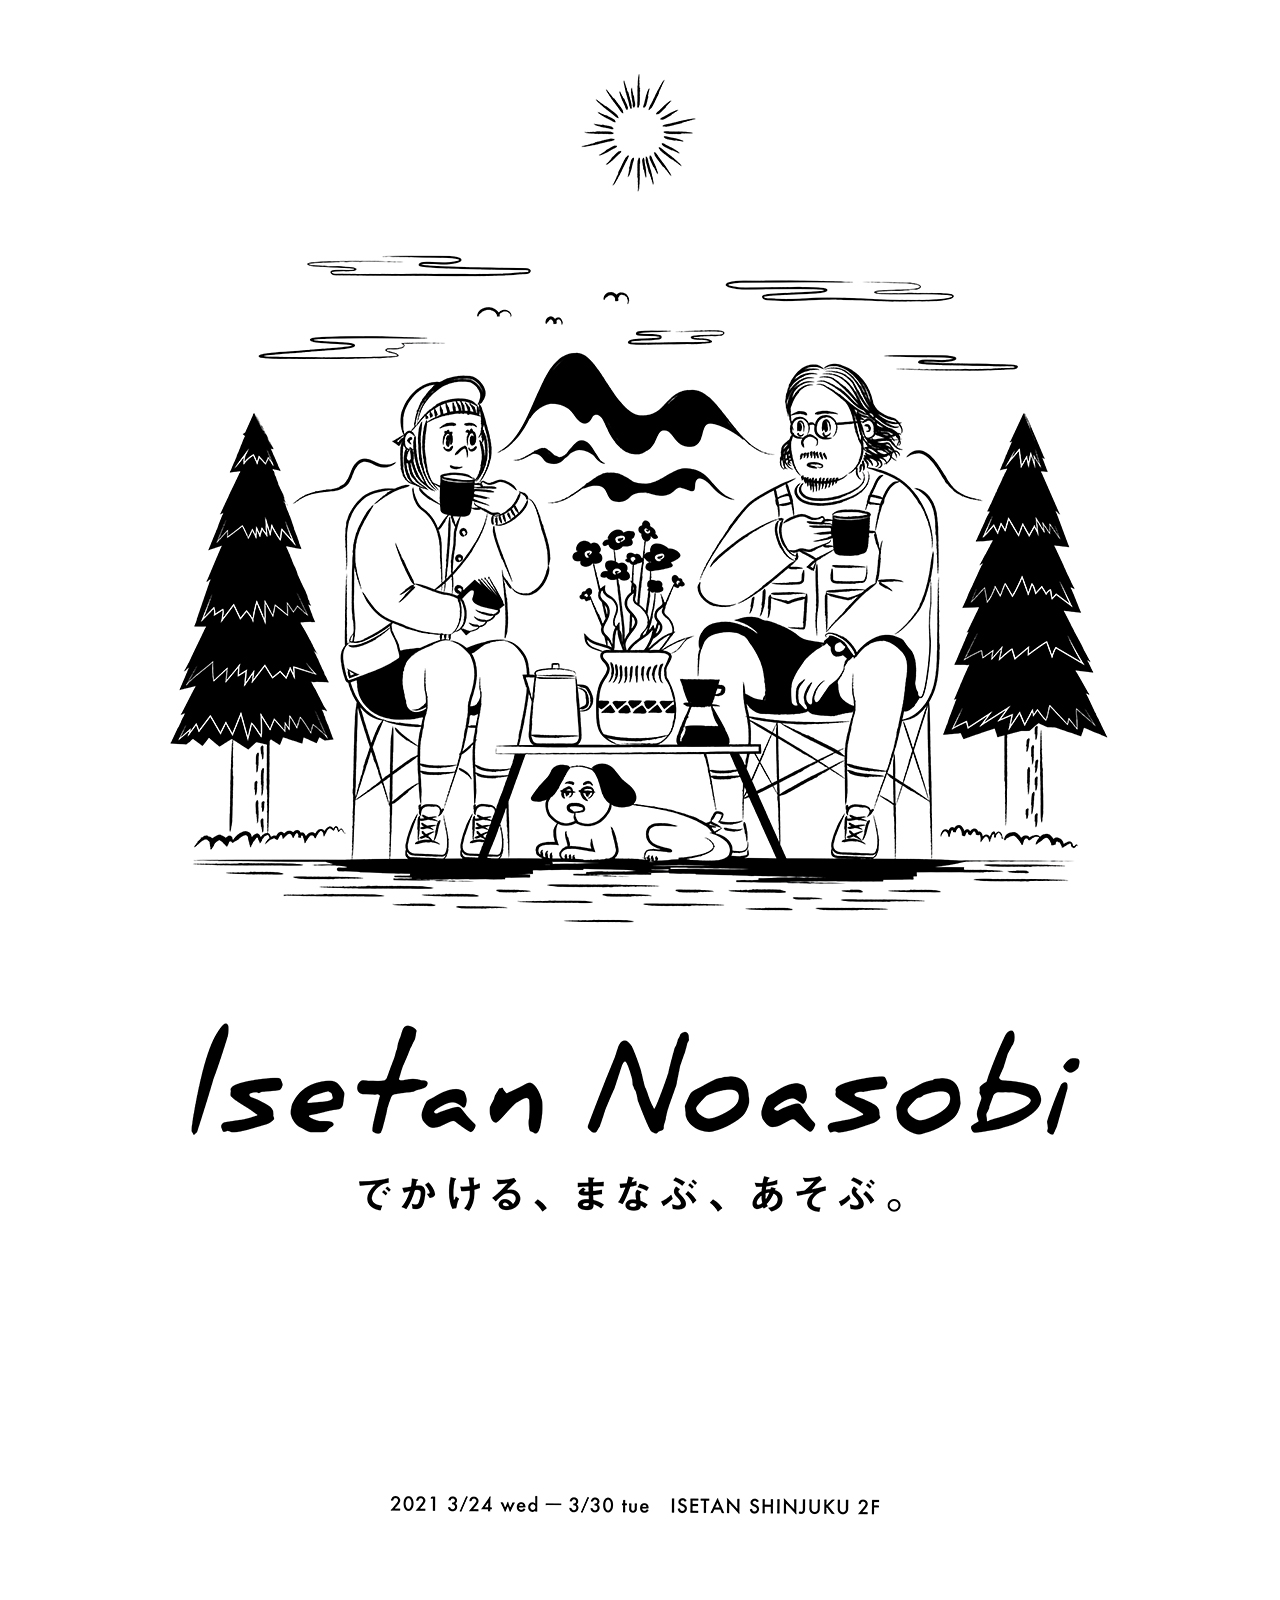 『Isetan Noasobi』に出店いたします。